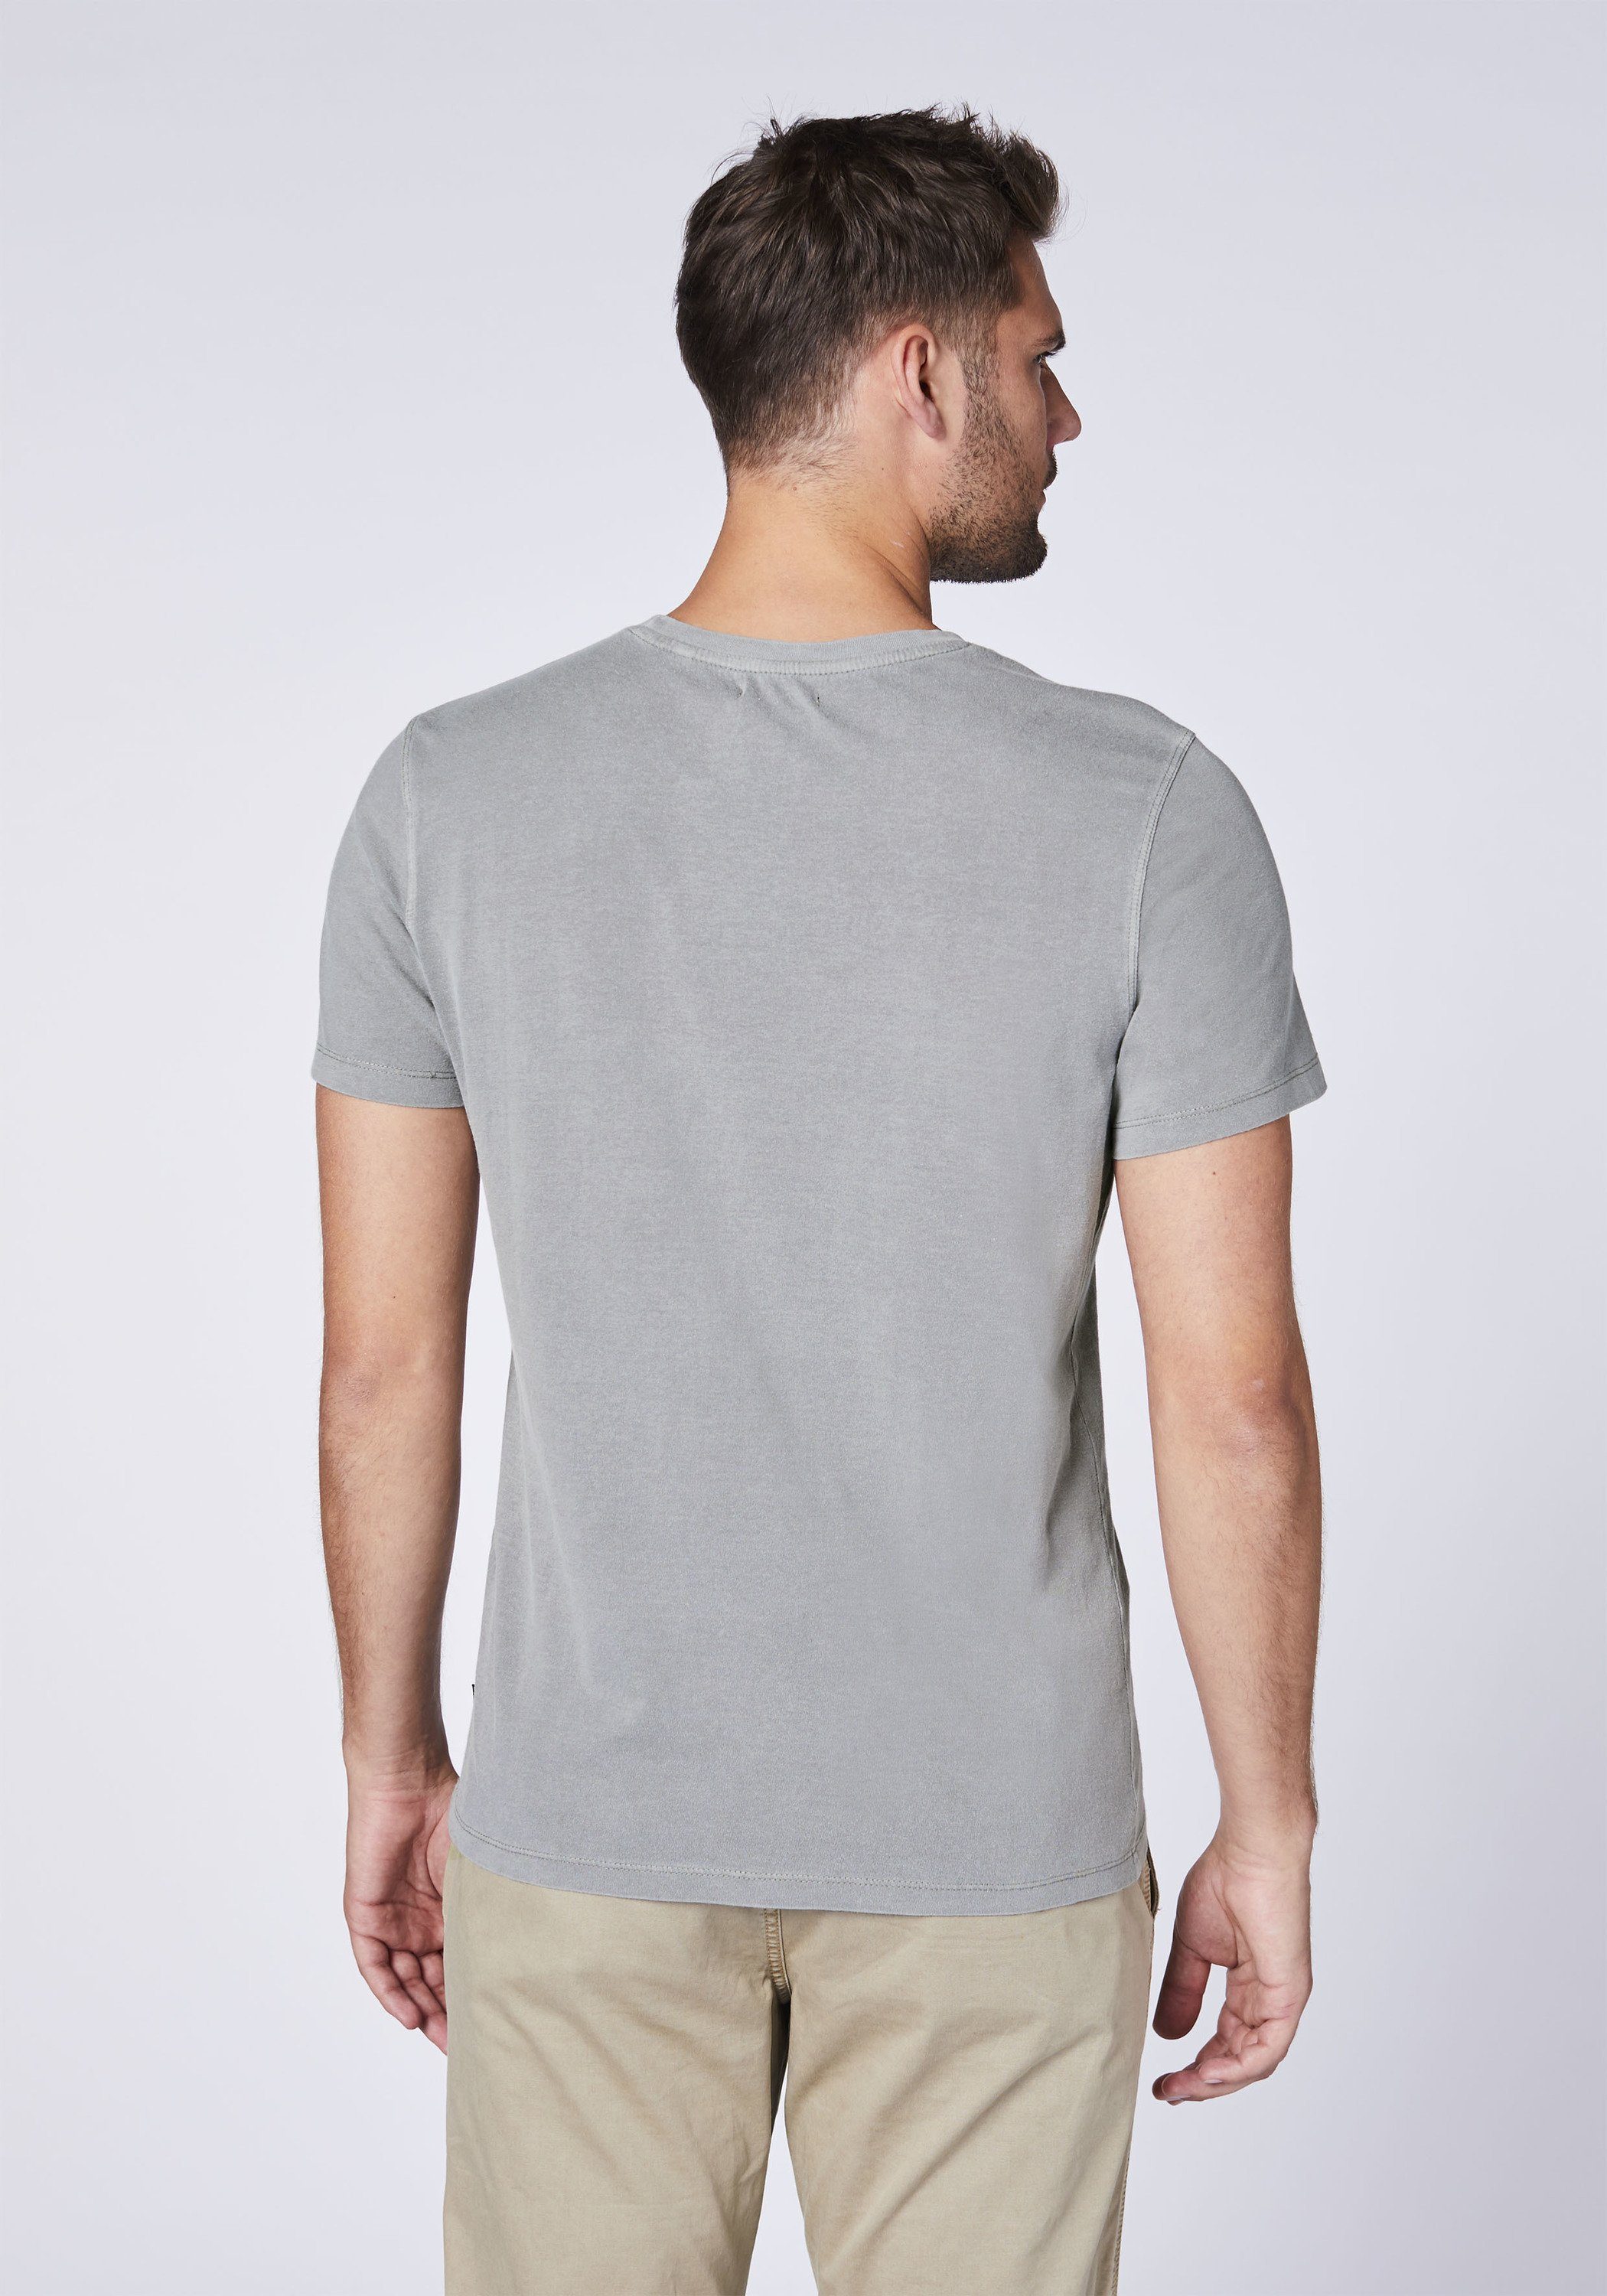 Wet T-Shirt 1 aus Baumwolle Chiemsee Weather Print-Shirt